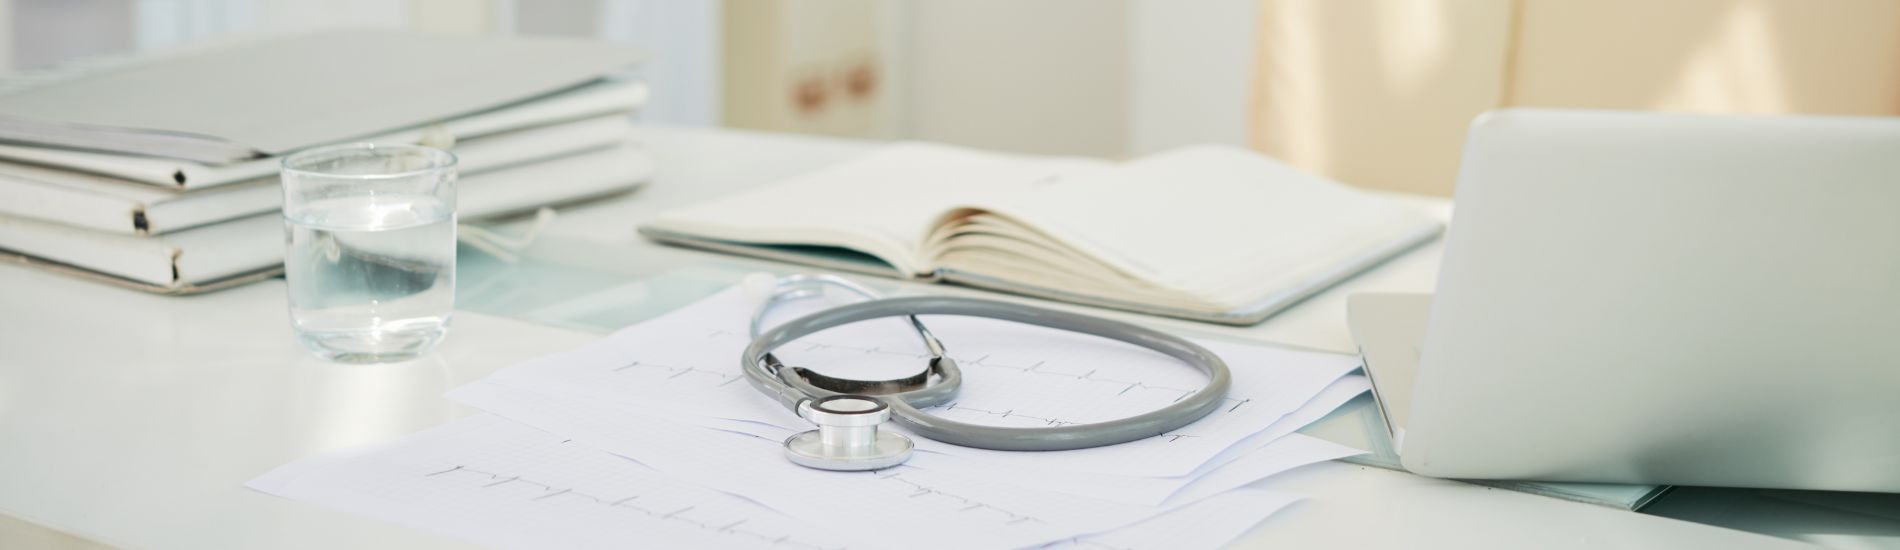 Otworzenie gabinetu lekarskiego — jakie warunki należy spełnić?